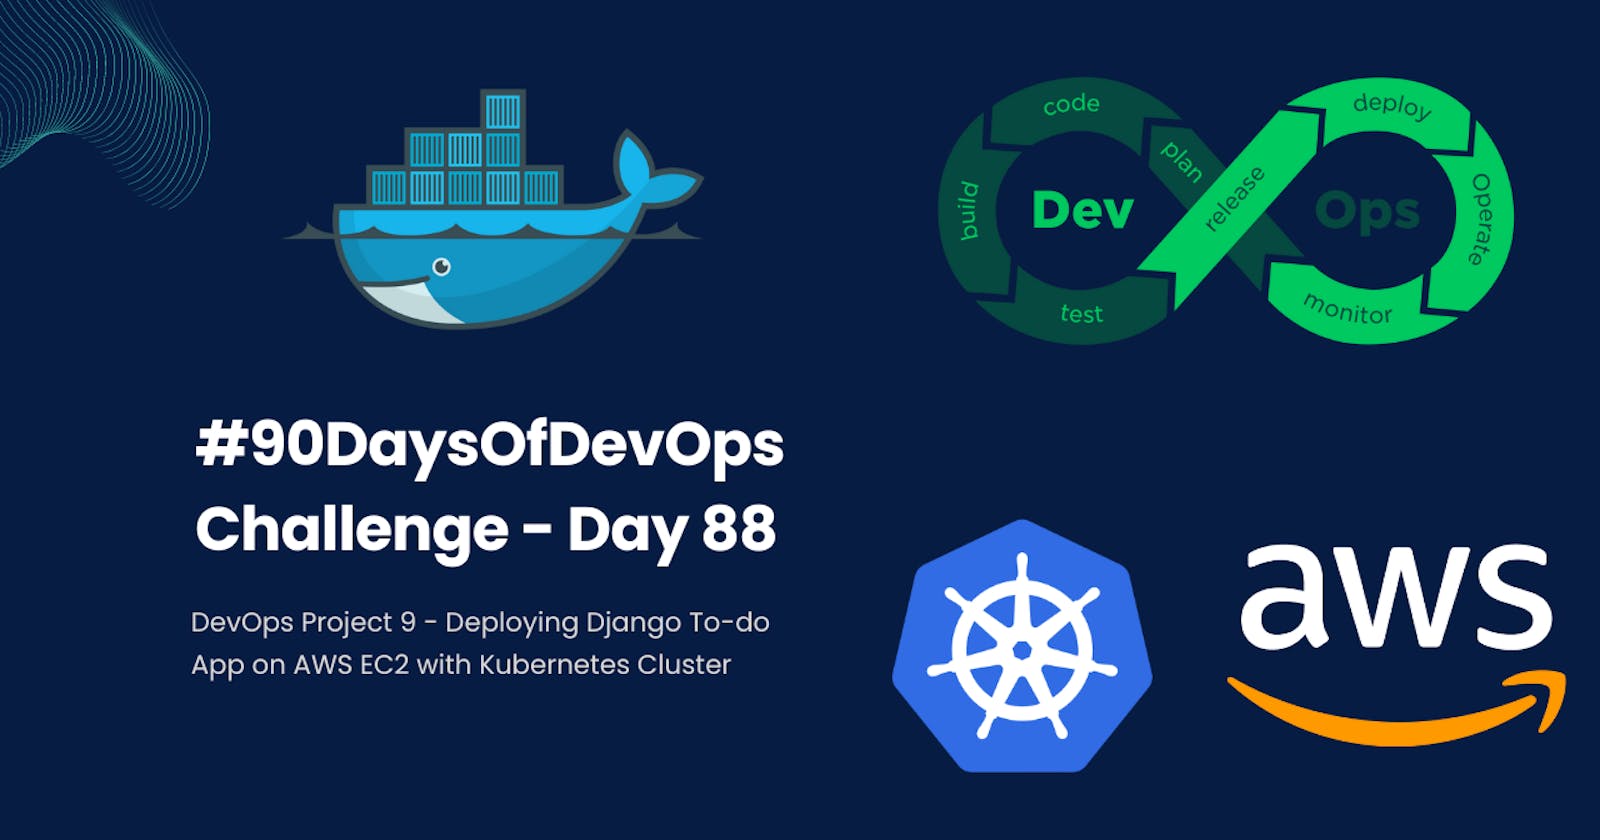 #90DaysOfDevOps Challenge - Day 88 - DevOps Project 9 - Deploying Django To-do App on AWS EC2 with Kubernetes Cluster